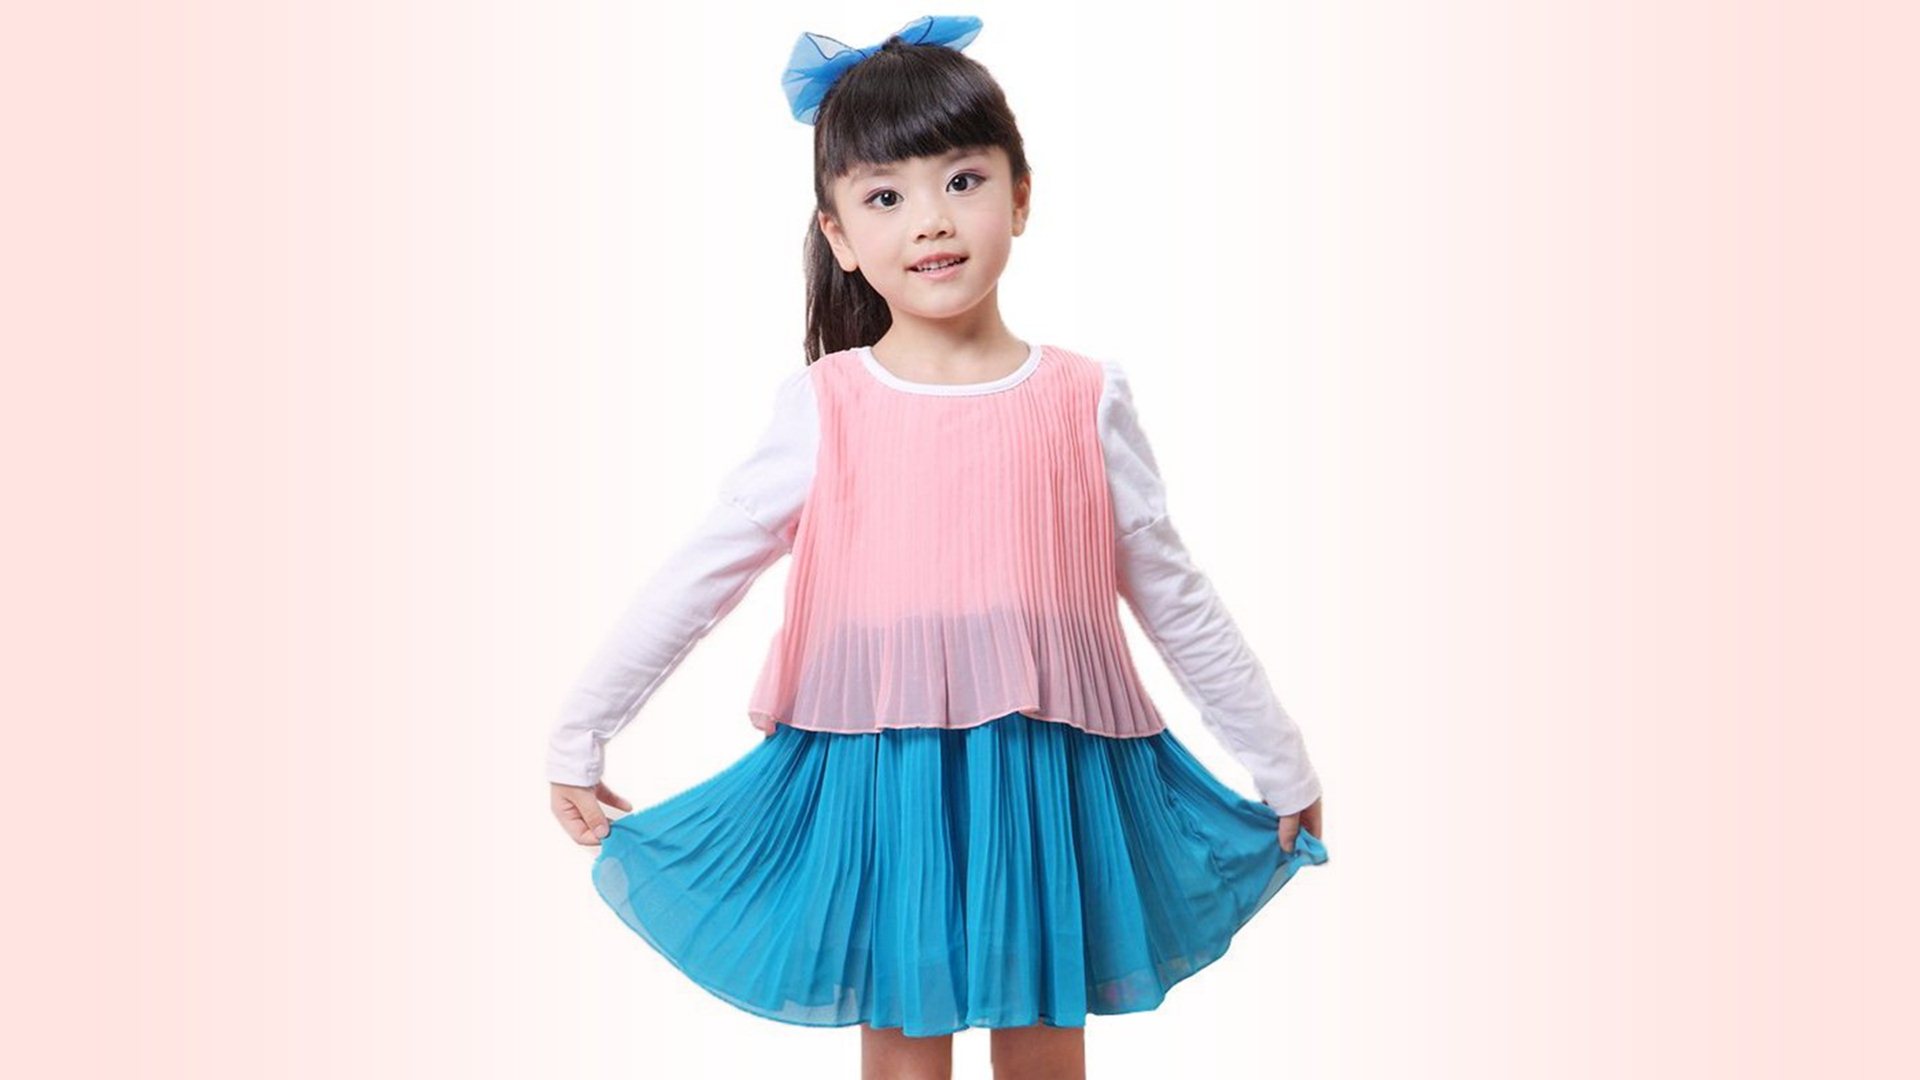 Kids Fashion Beautiful Dress For Baby Girl HD Wallpaper